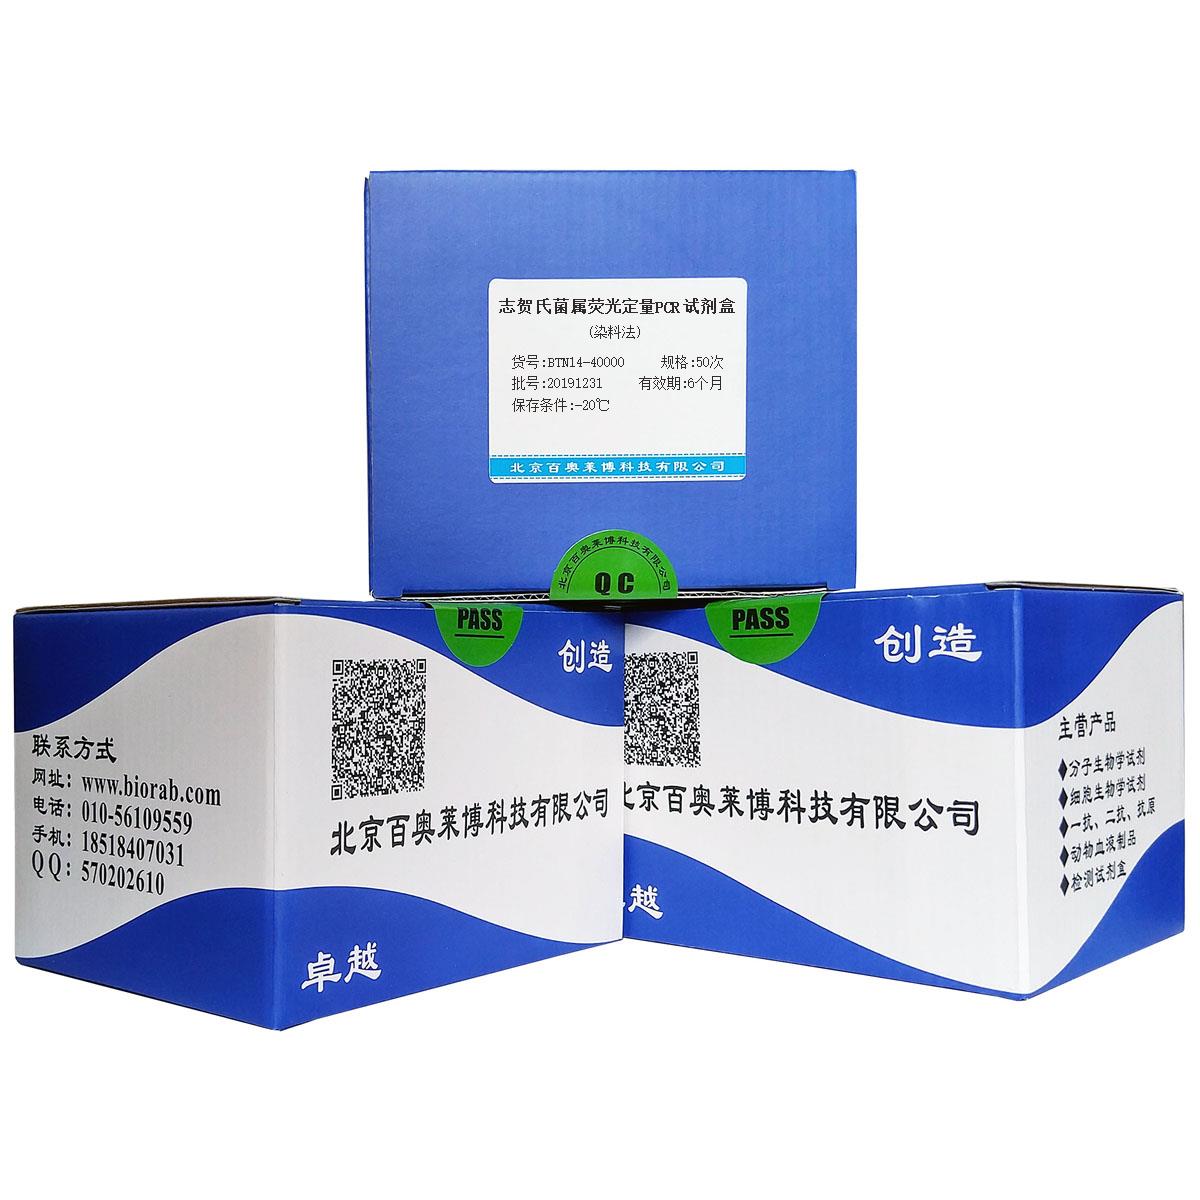 志贺氏菌属荧光定量PCR试剂盒(染料法)